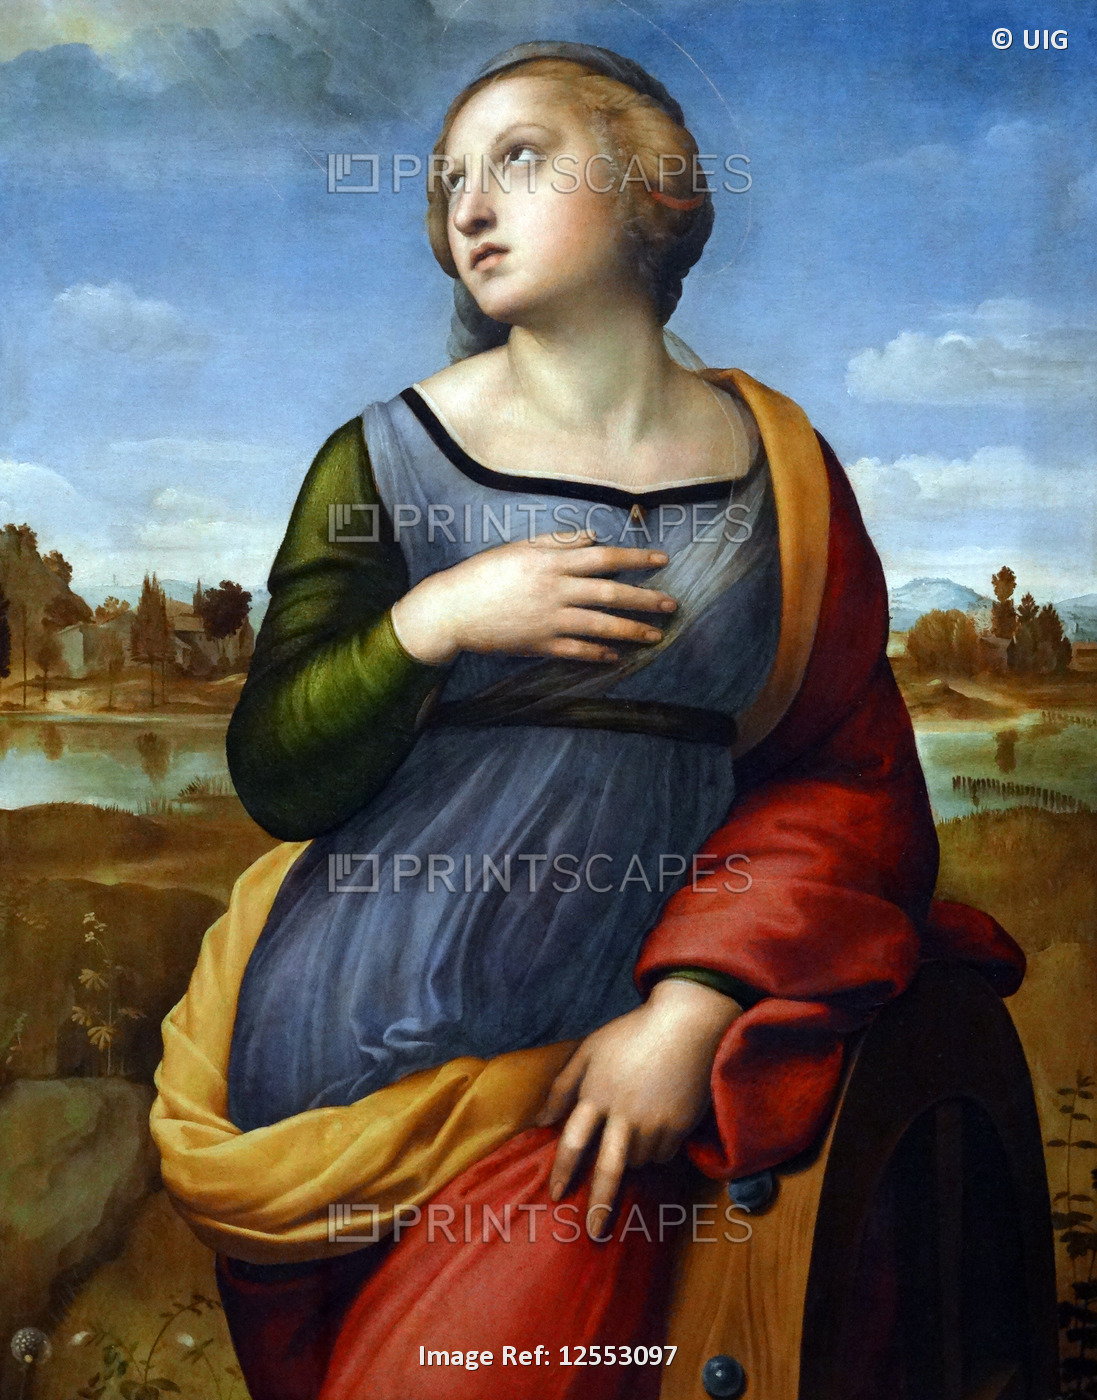 Painting titled 'Saint Catherine of Alexandria' by Raffaello Sanzio da Urbino, 16th century